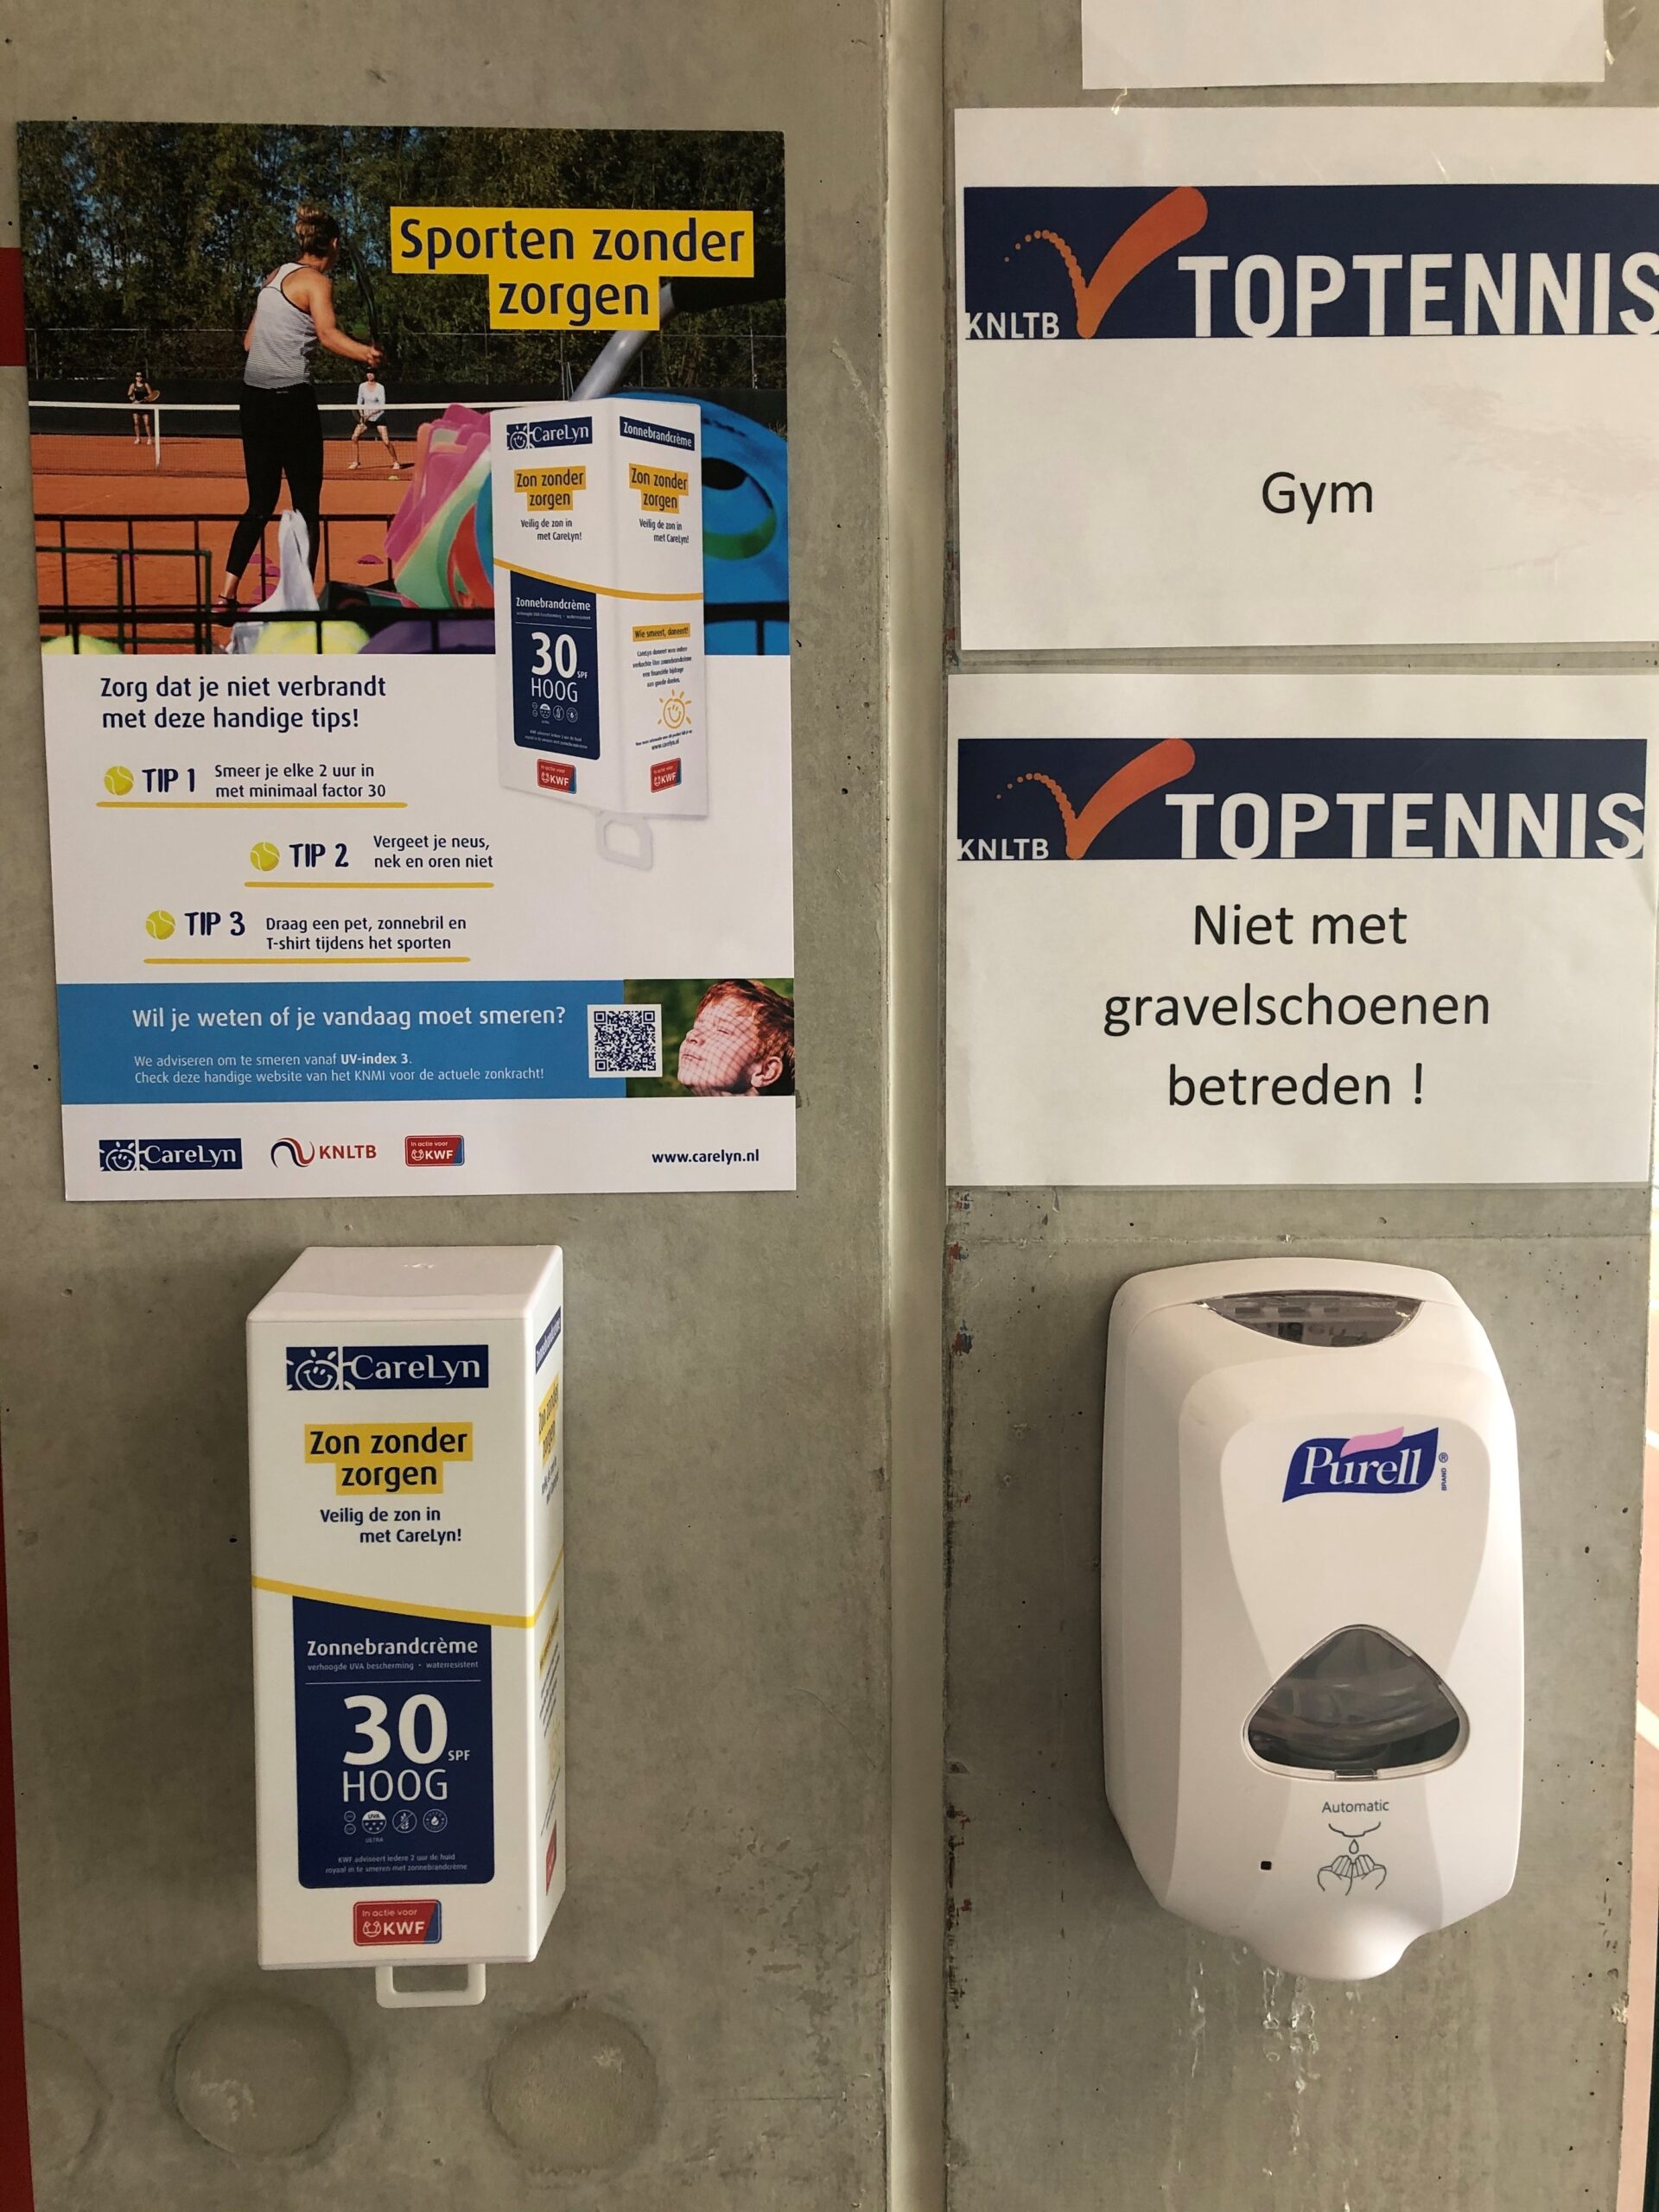 CareLyn zonnebrandcreme dispenser bij een tennis vereniging naast een hand disinfectie dispenser